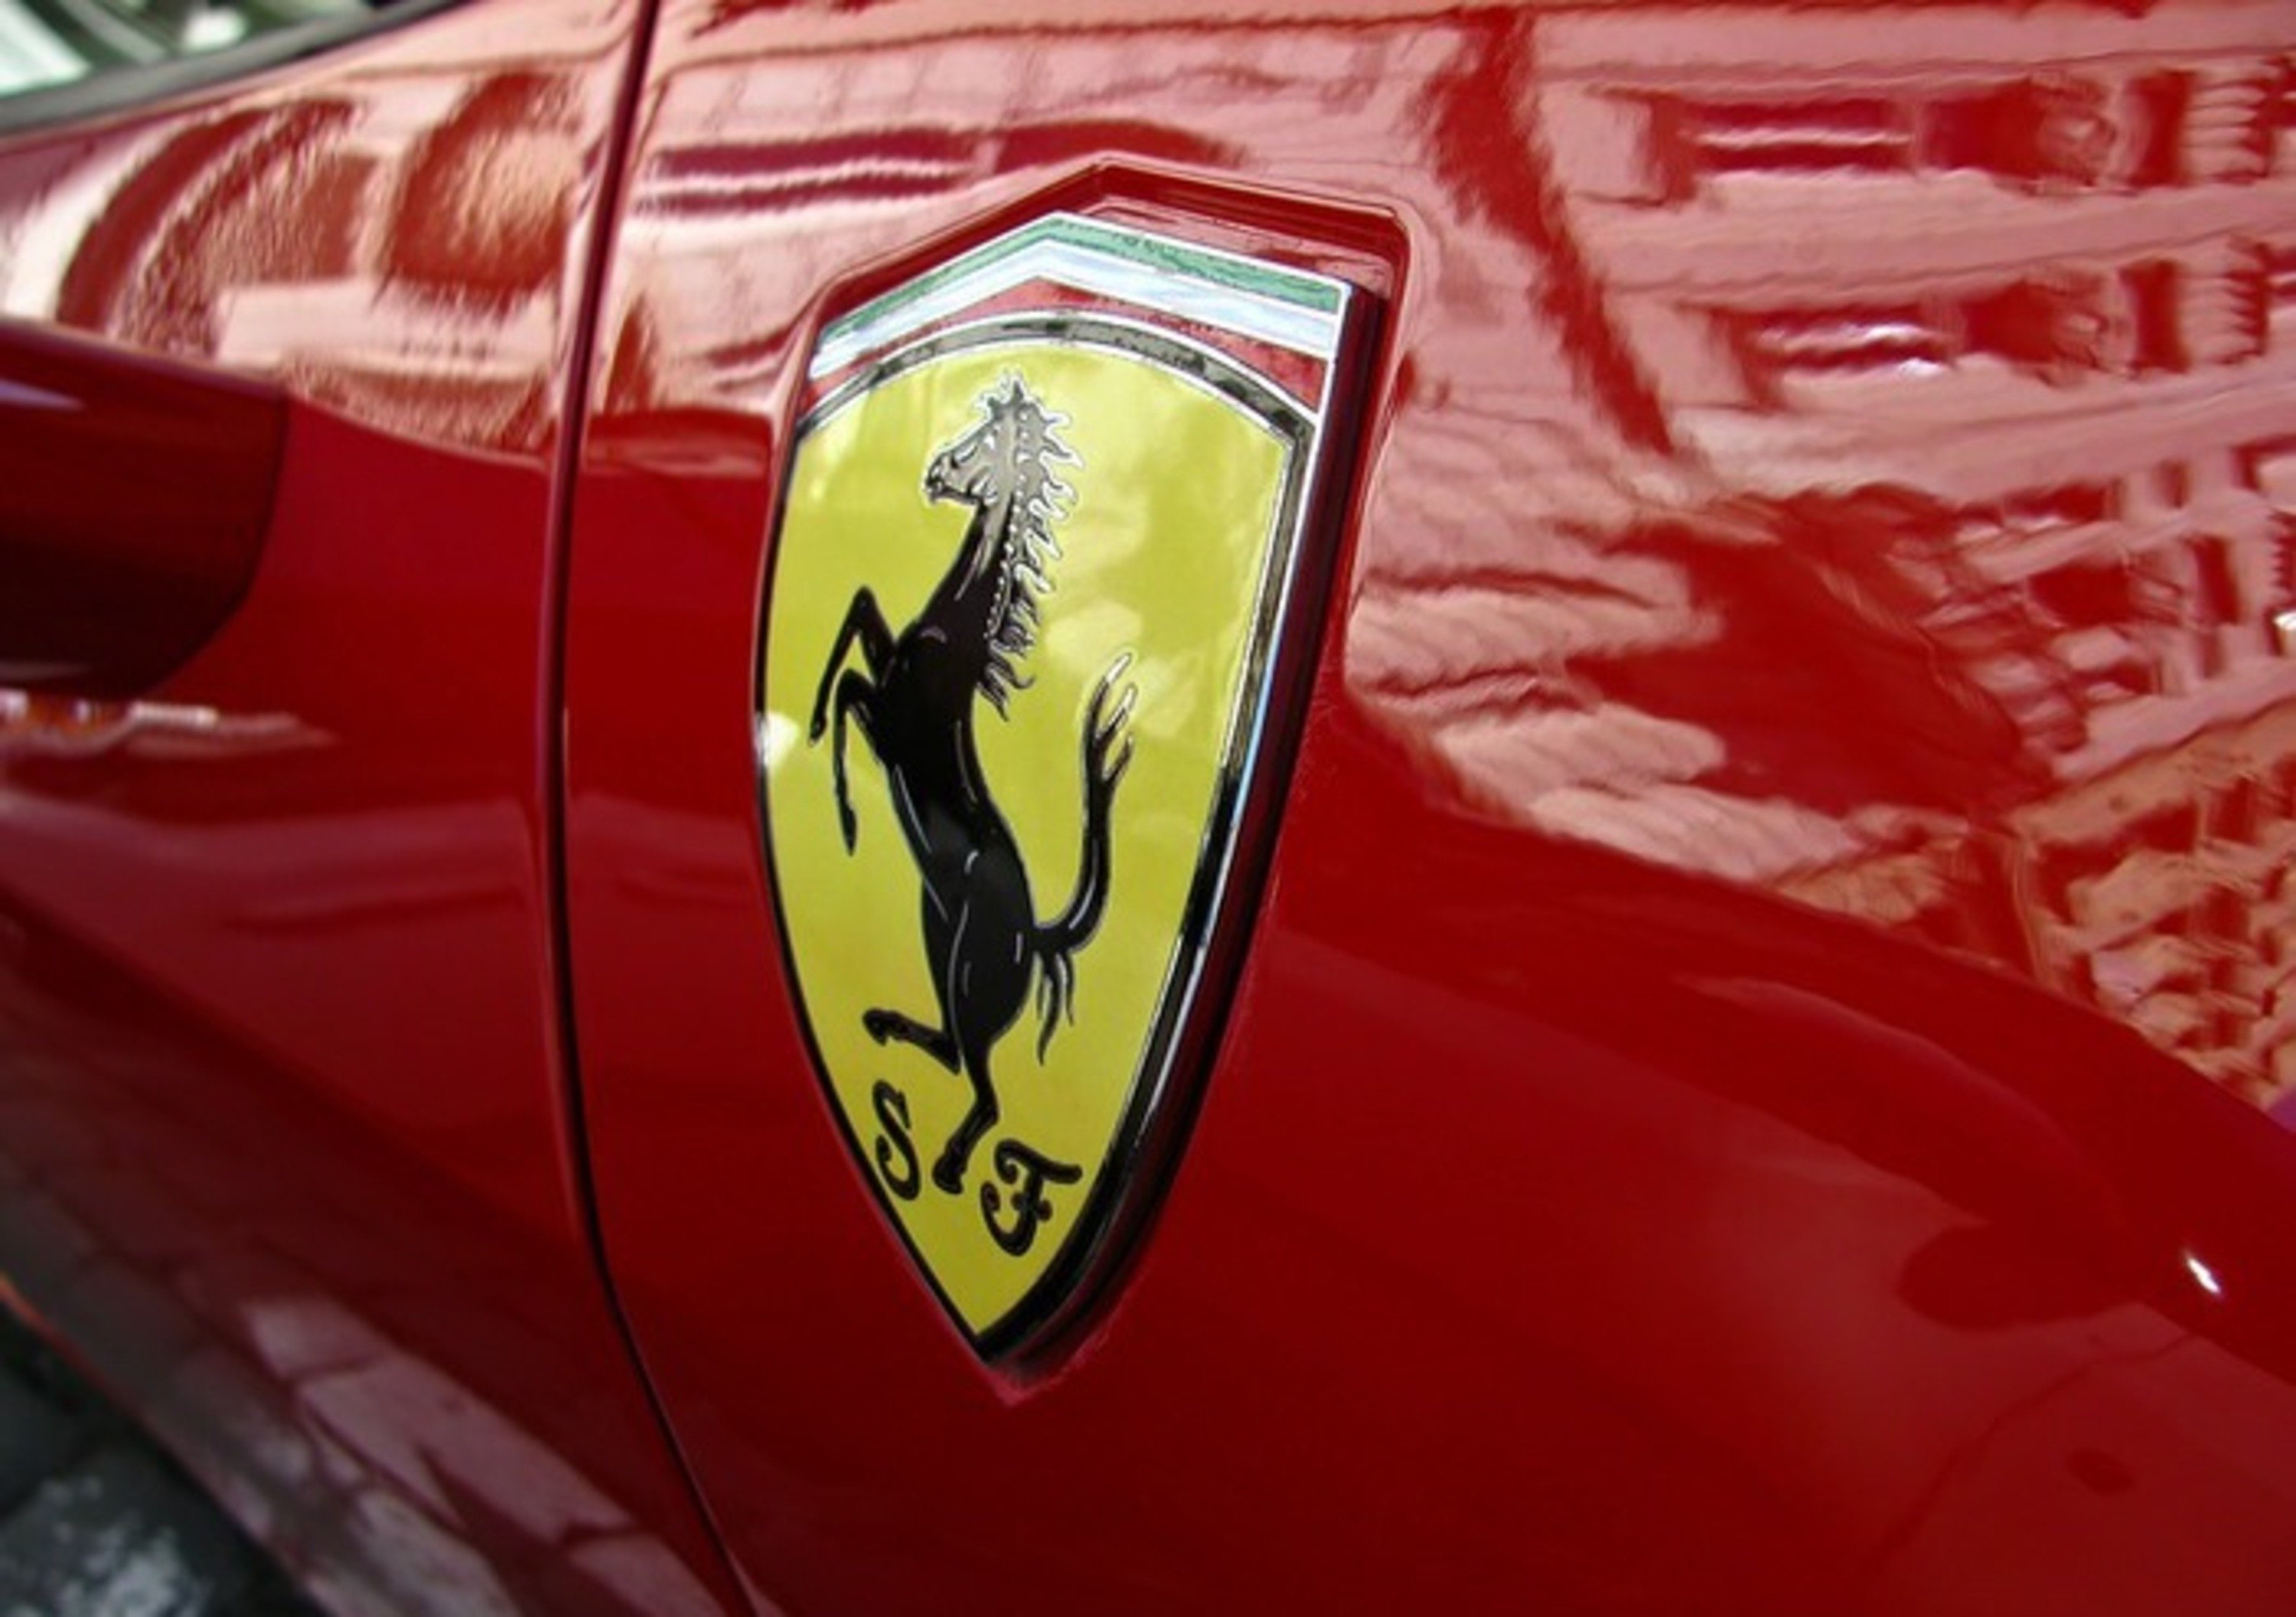 Ferrari migliore azienda italiana per reputazione